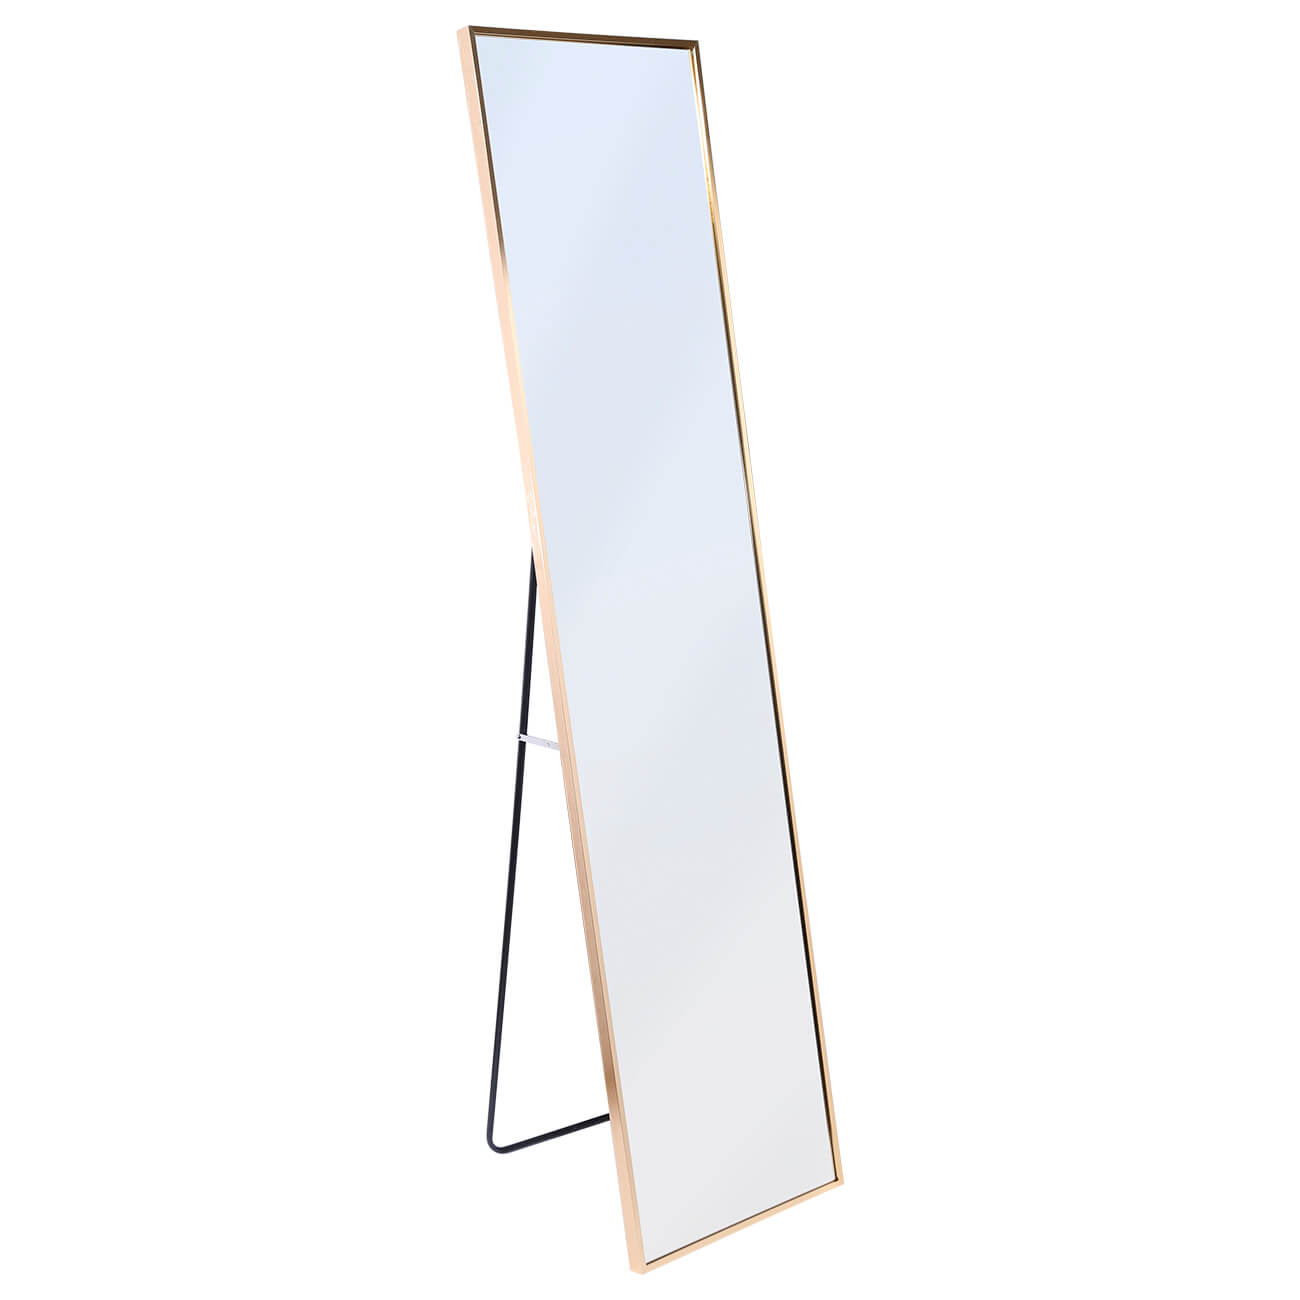 Зеркало напольное, 35х150 см, металл, прямоугольное, золотистое, Trend сувенир полистоун металл